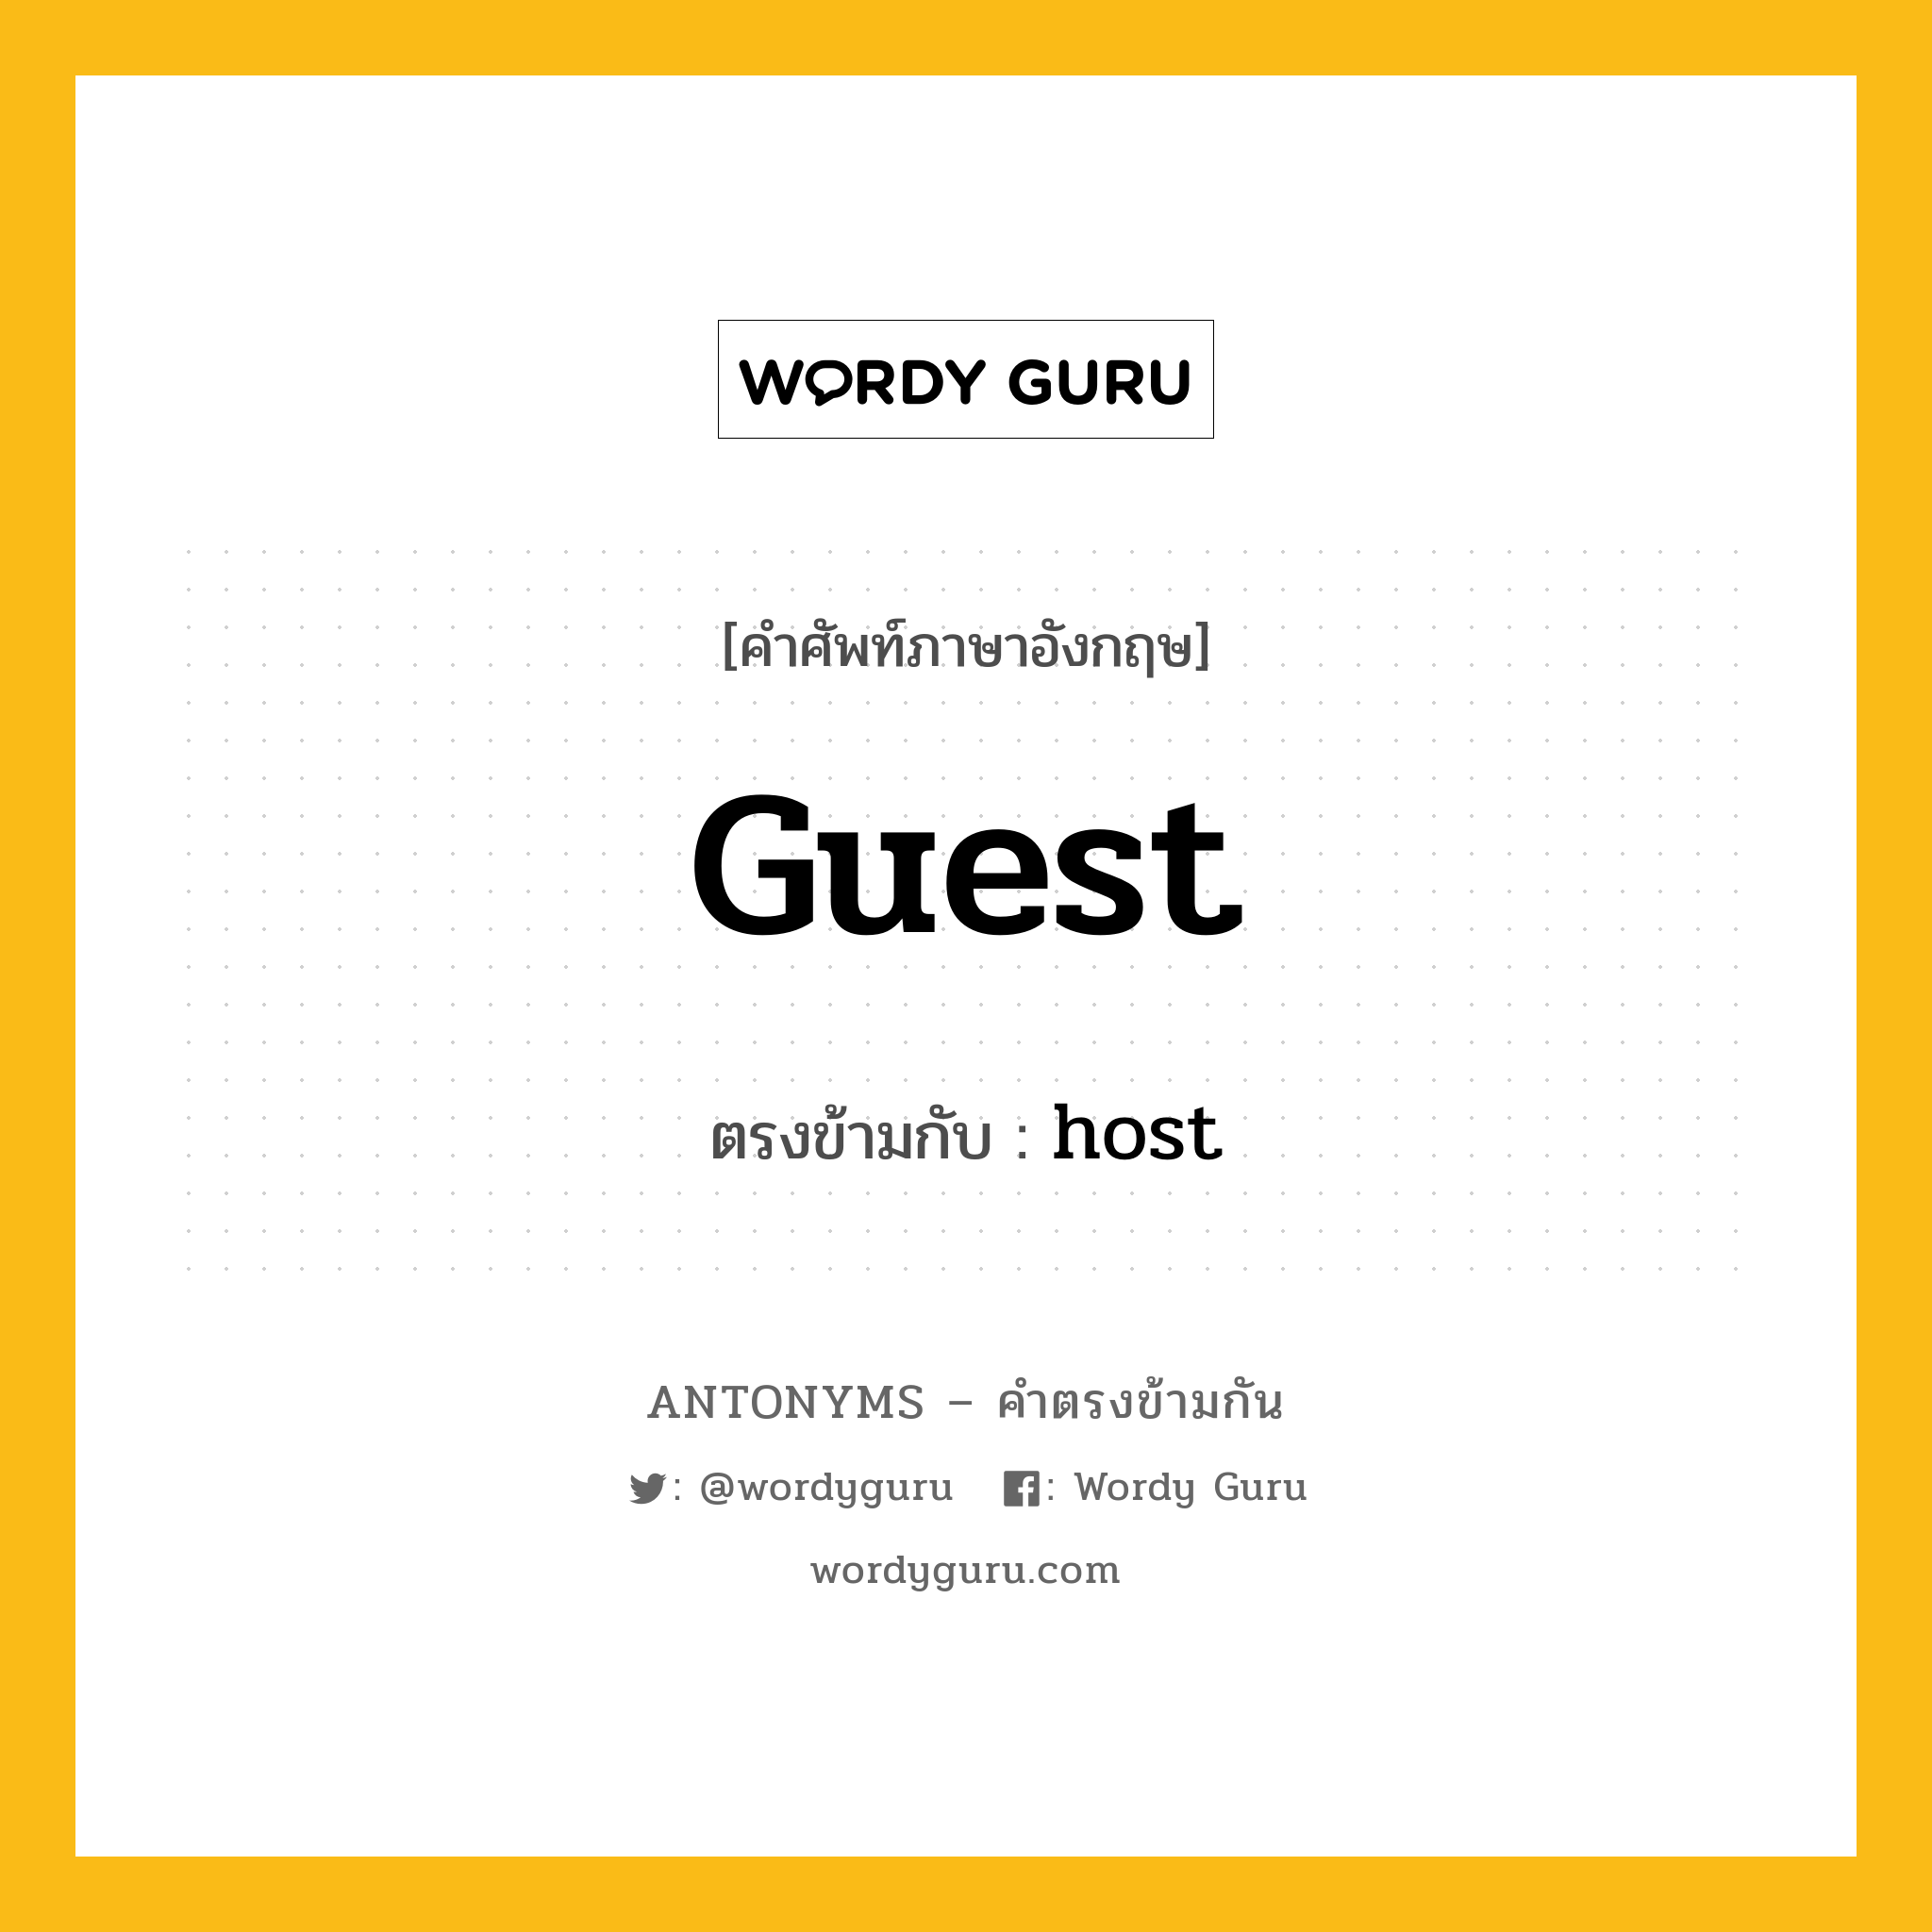 guest เป็นคำตรงข้ามกับคำไหนบ้าง?, คำศัพท์ภาษาอังกฤษ guest ตรงข้ามกับ host หมวด host